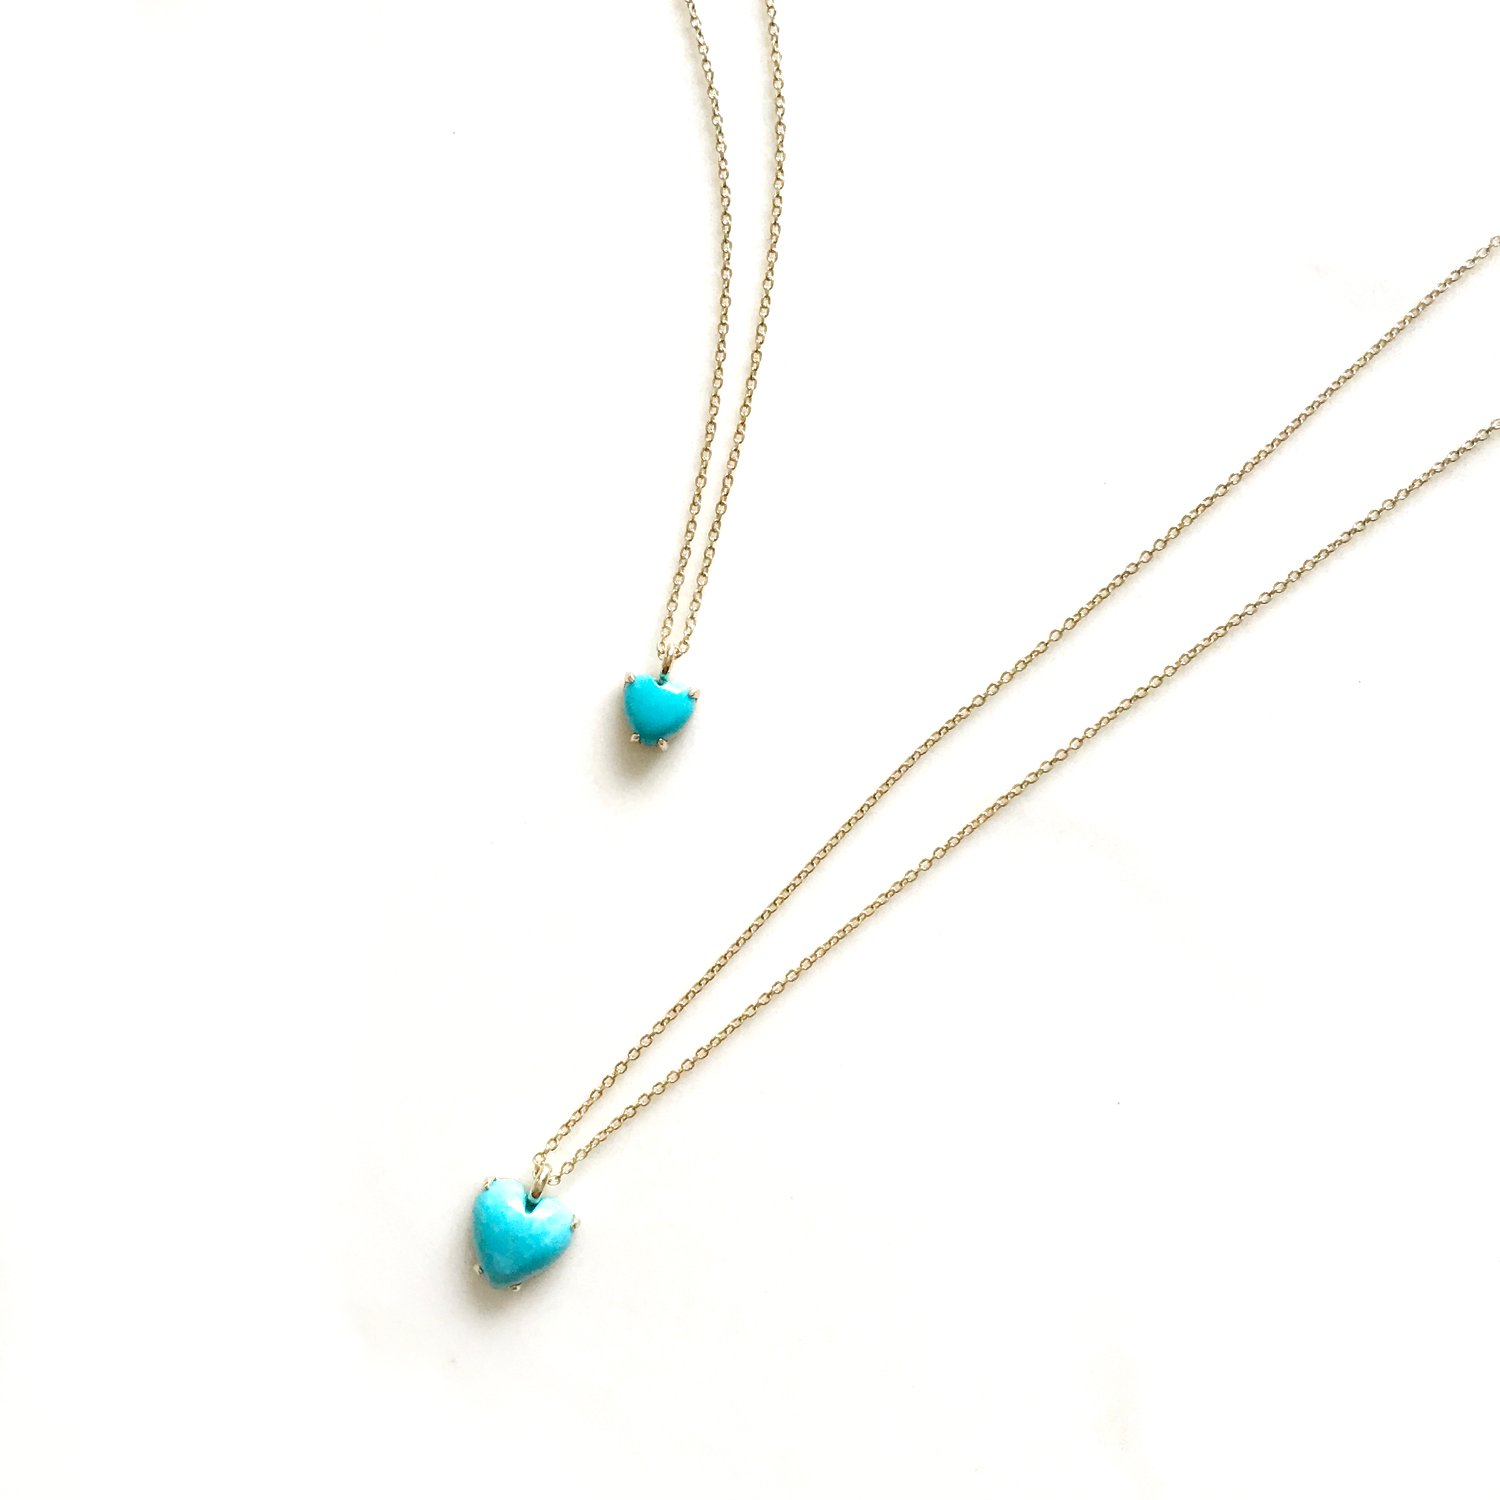 Sleeping beauty turquoise necklace - arizona turquoise - genuine turquoise  necklace - raw turquoise necklace - turquoise necklace in gold